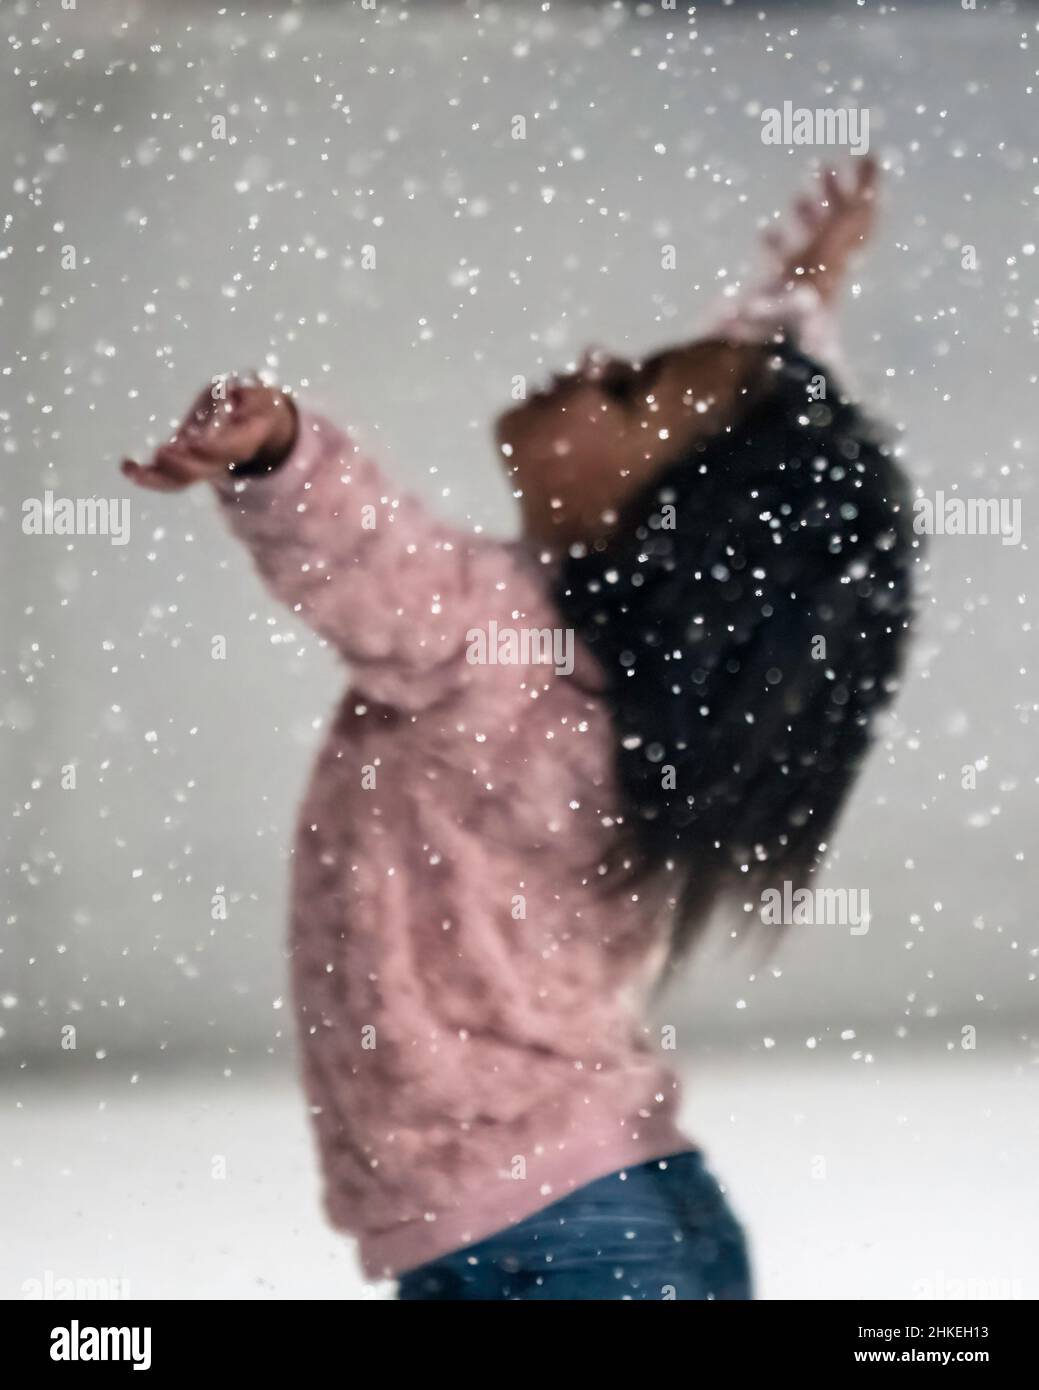 Prattville, Alabama, USA- 23 dicembre 2021: Focus sui fiocchi di neve con una giovane ragazza che solleva le mani in aria fuori fuoco in background Foto Stock